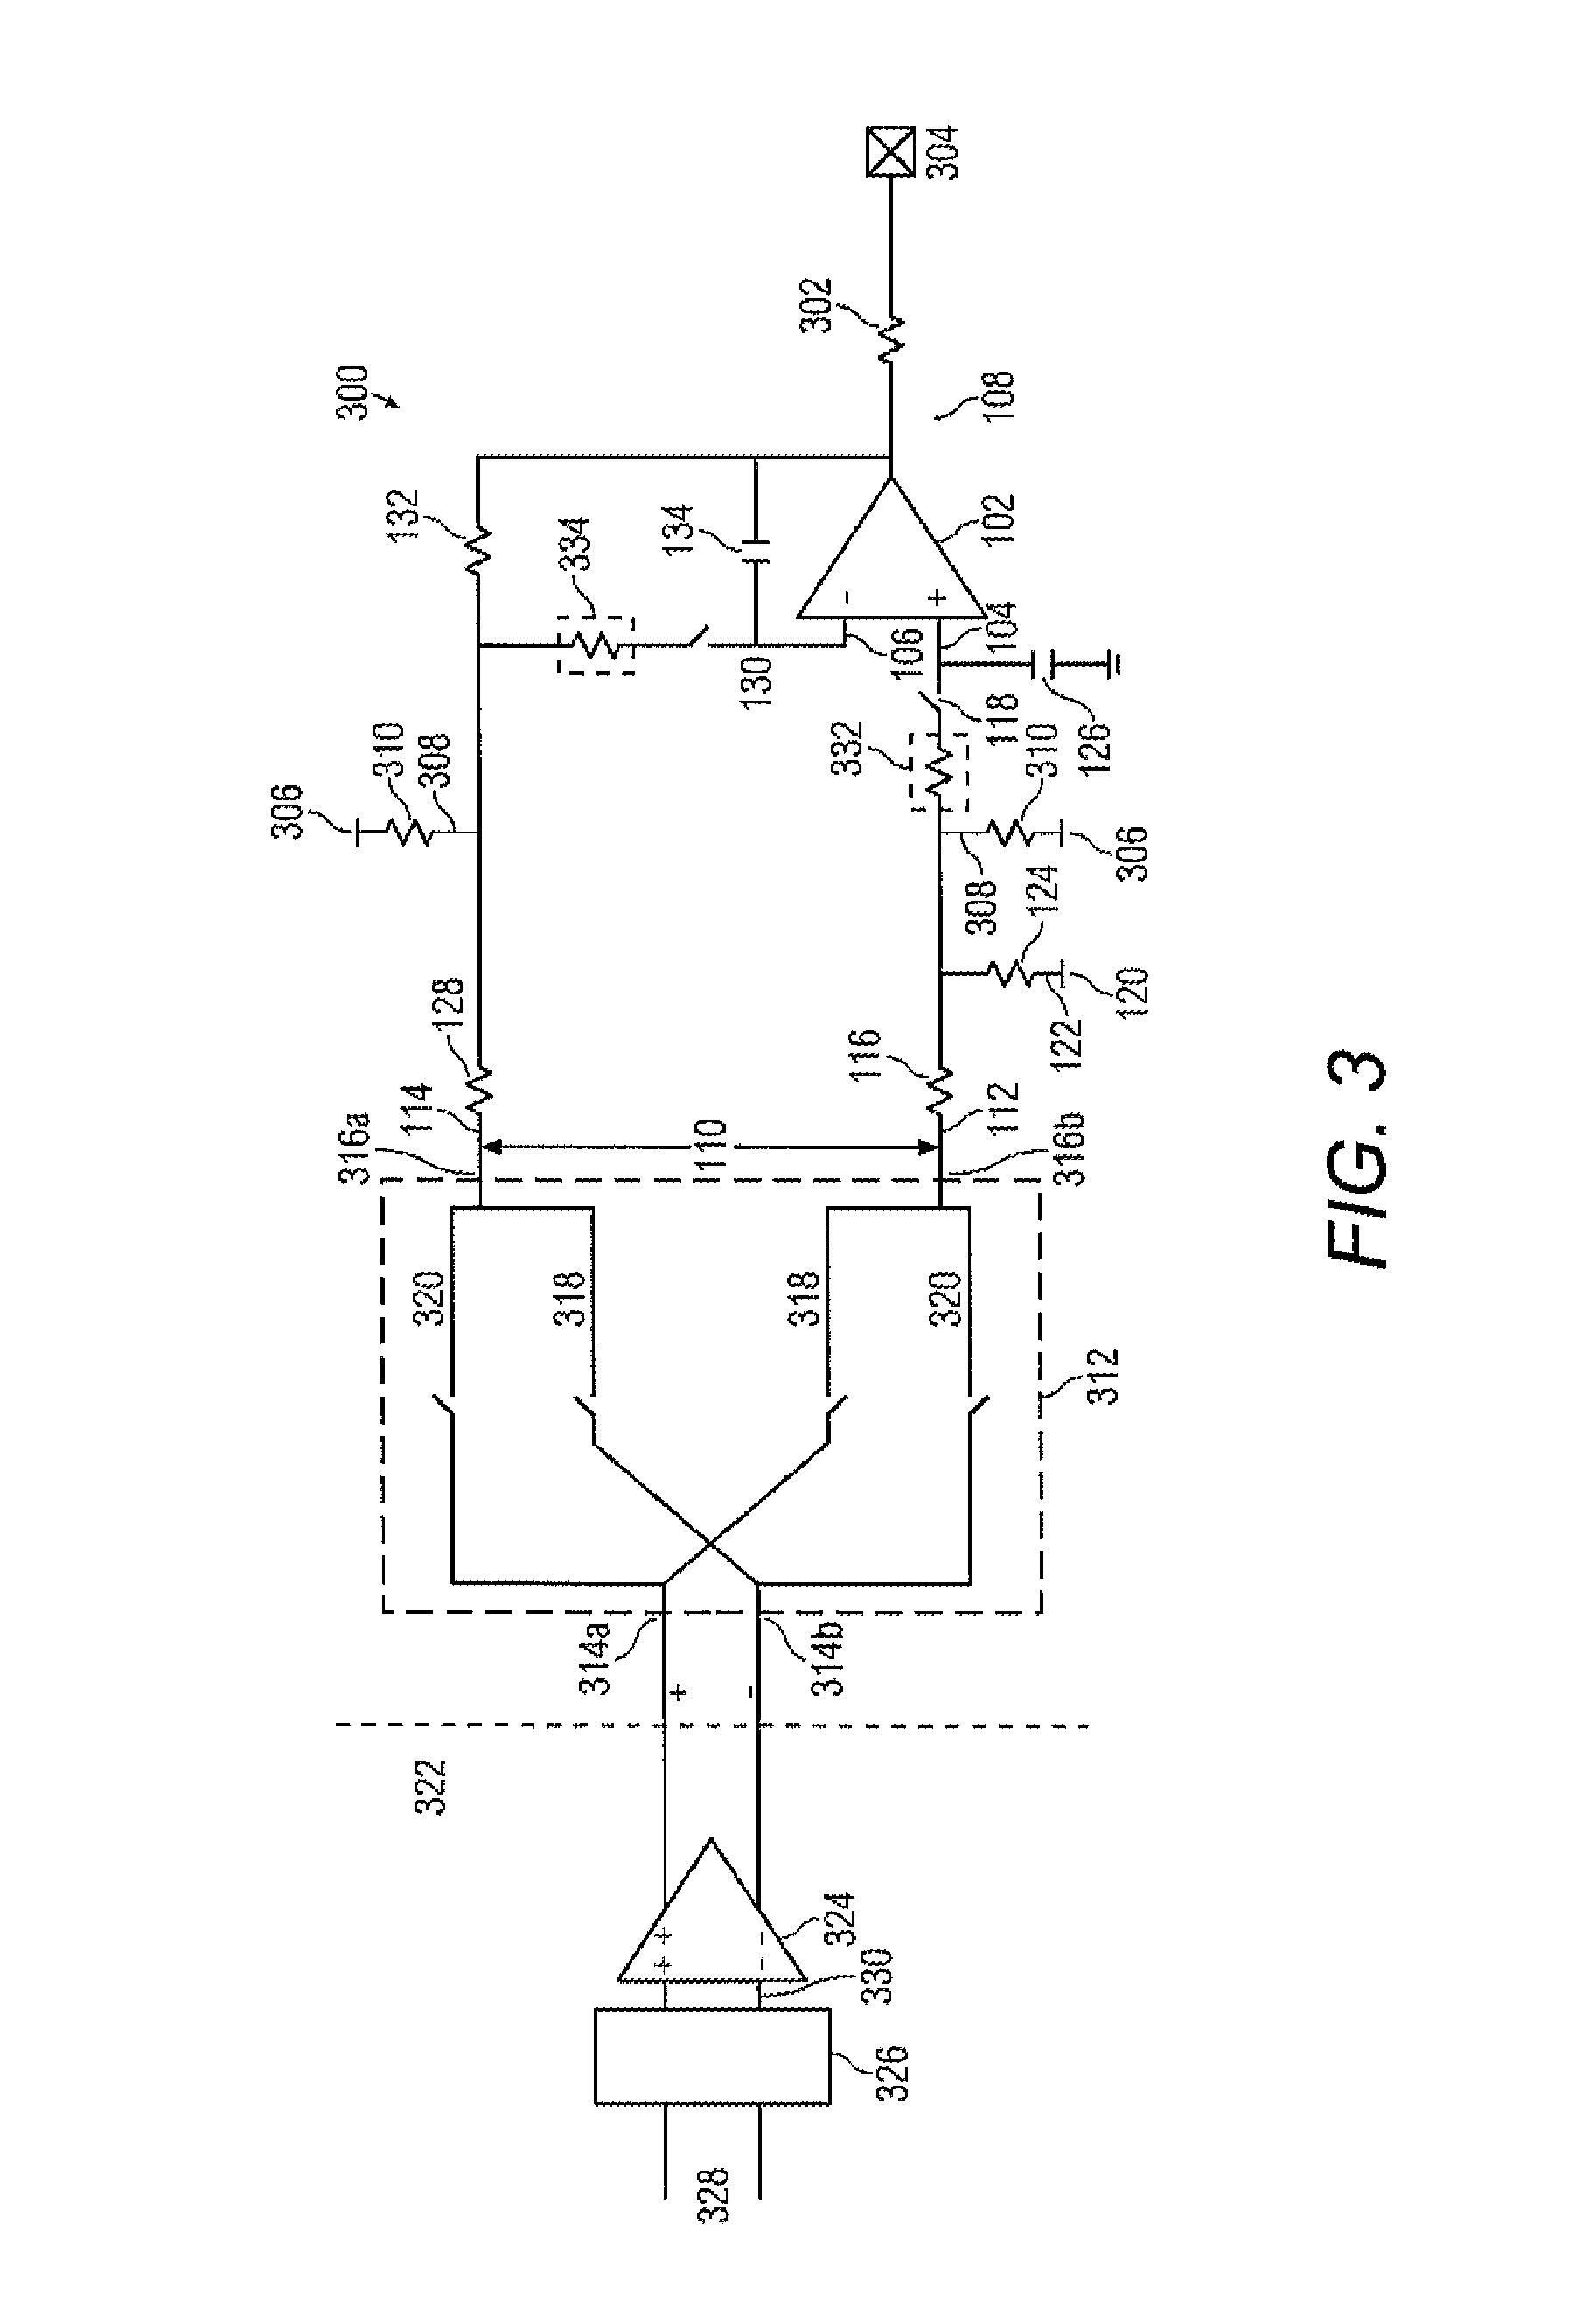 Low pass filter circuit